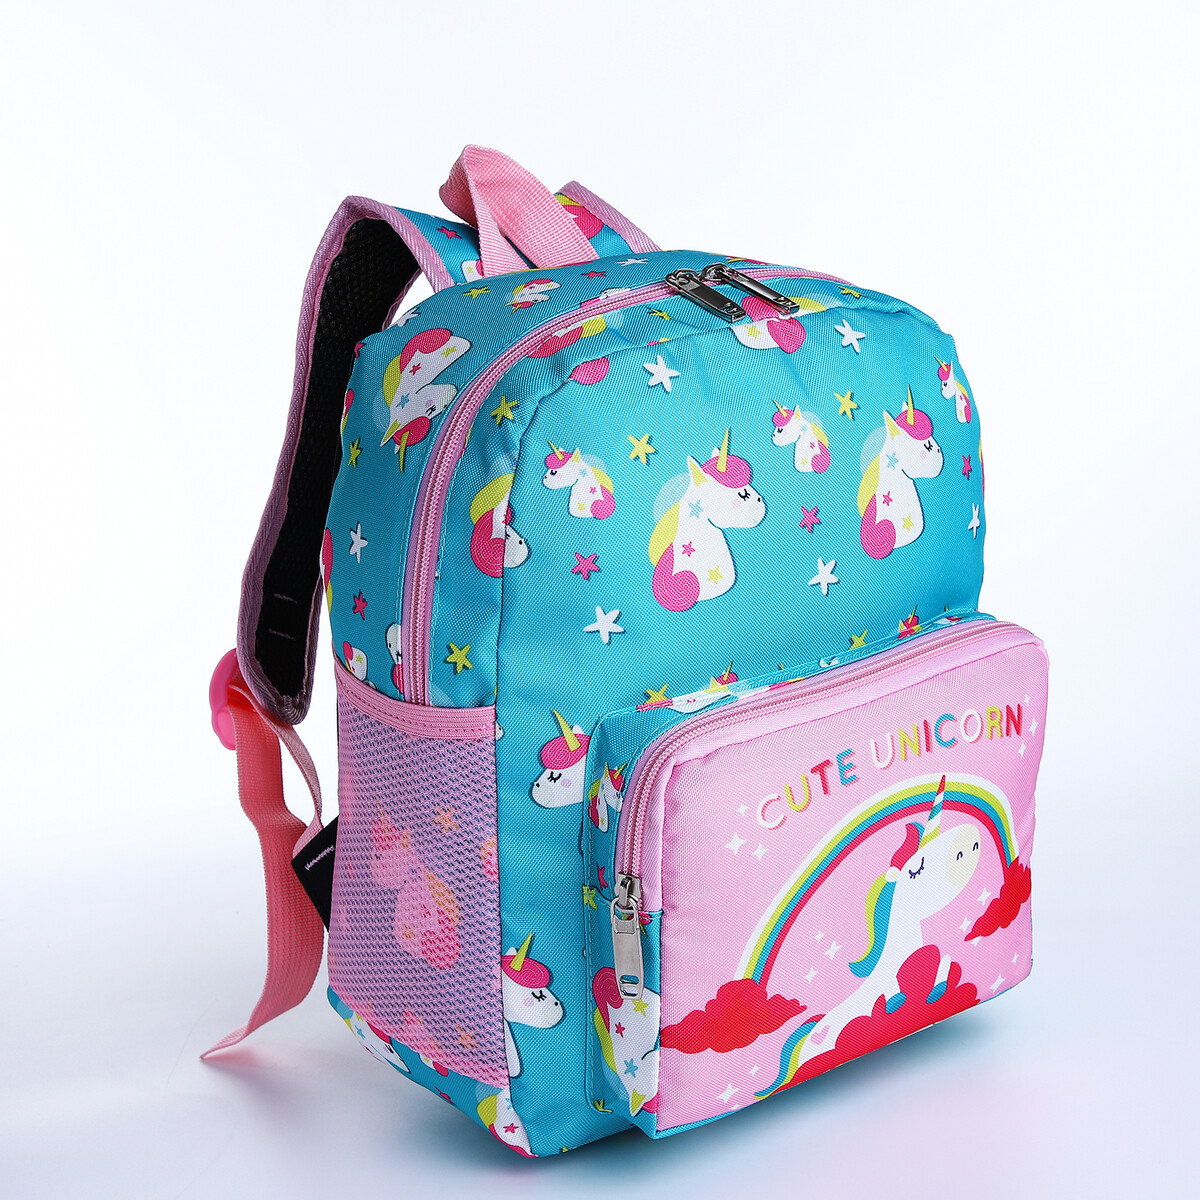 Рюкзак детский на молнии, 3 наружных кармана, цвет бирюзовый/розовый рюкзак сумка на молнии 4 наружных кармана отделение для обуви розовый